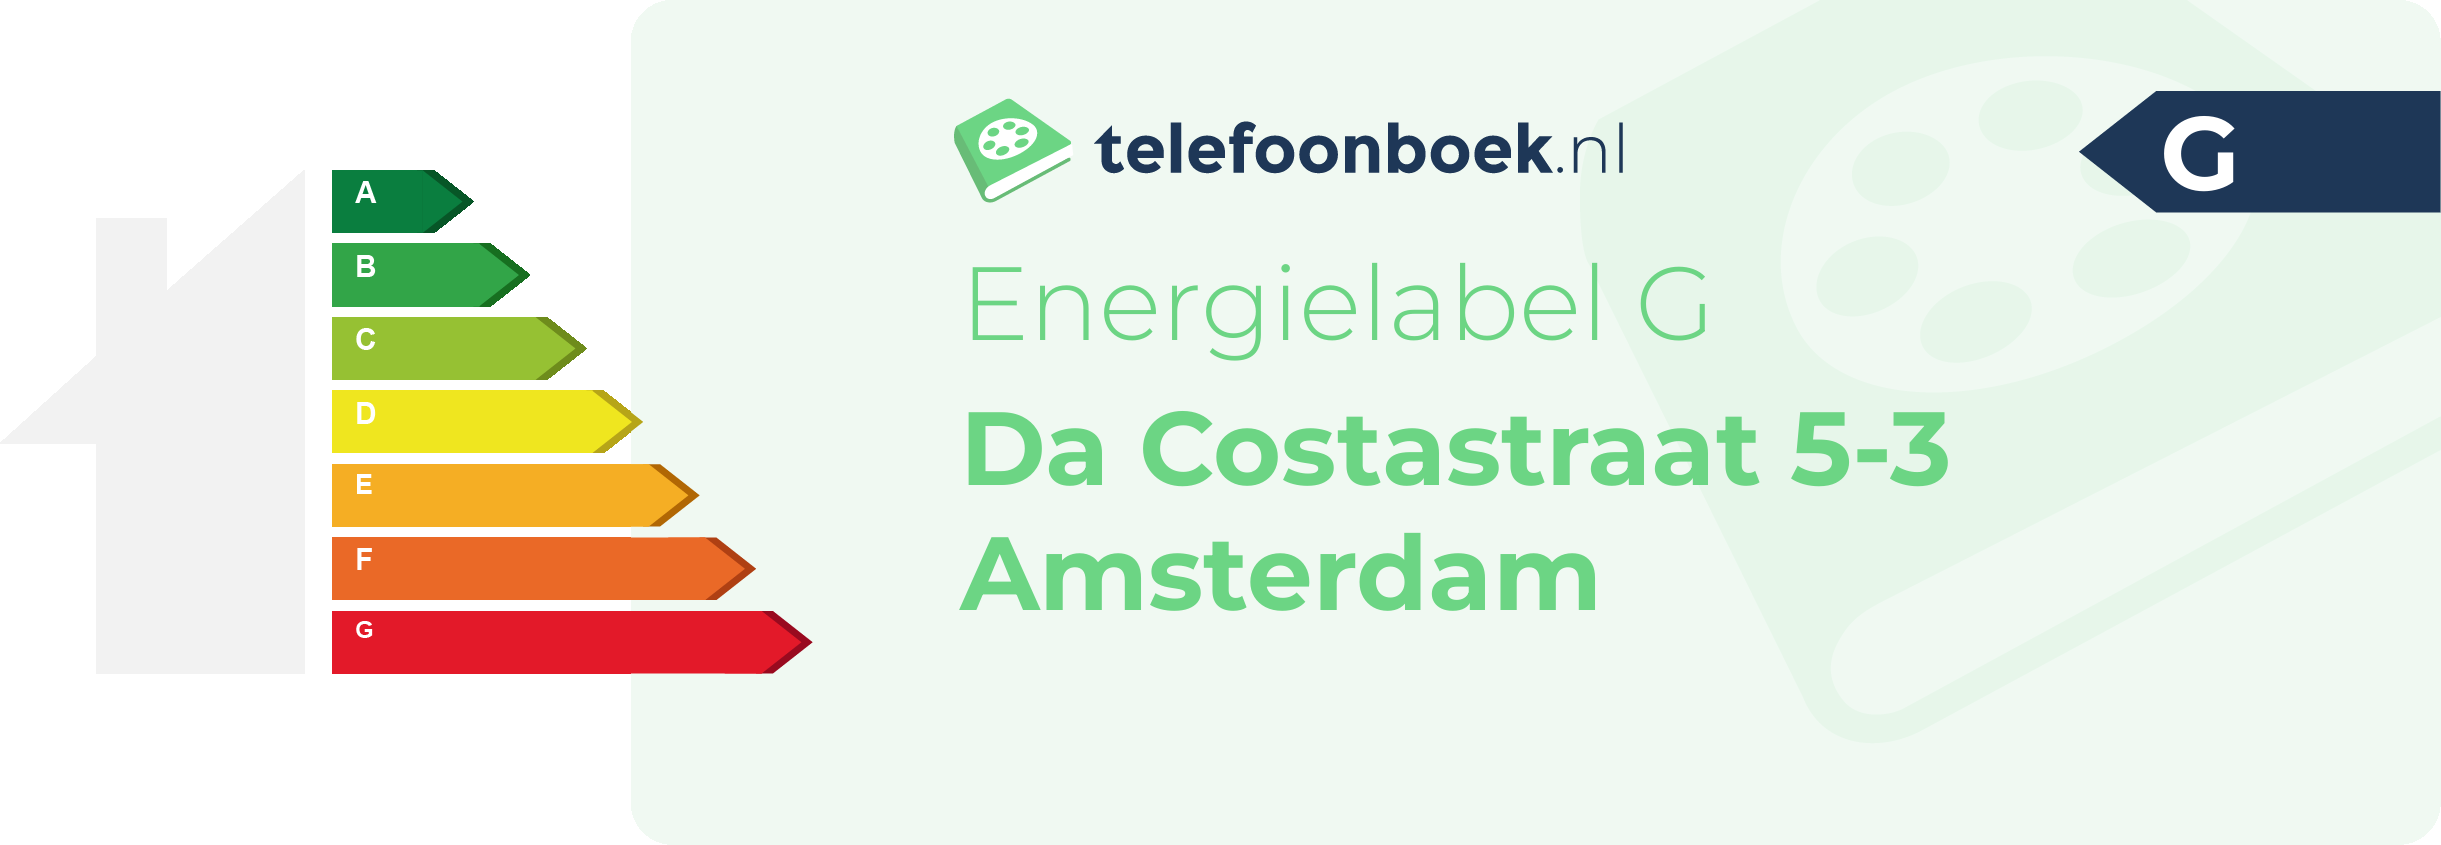 Energielabel Da Costastraat 5-3 Amsterdam